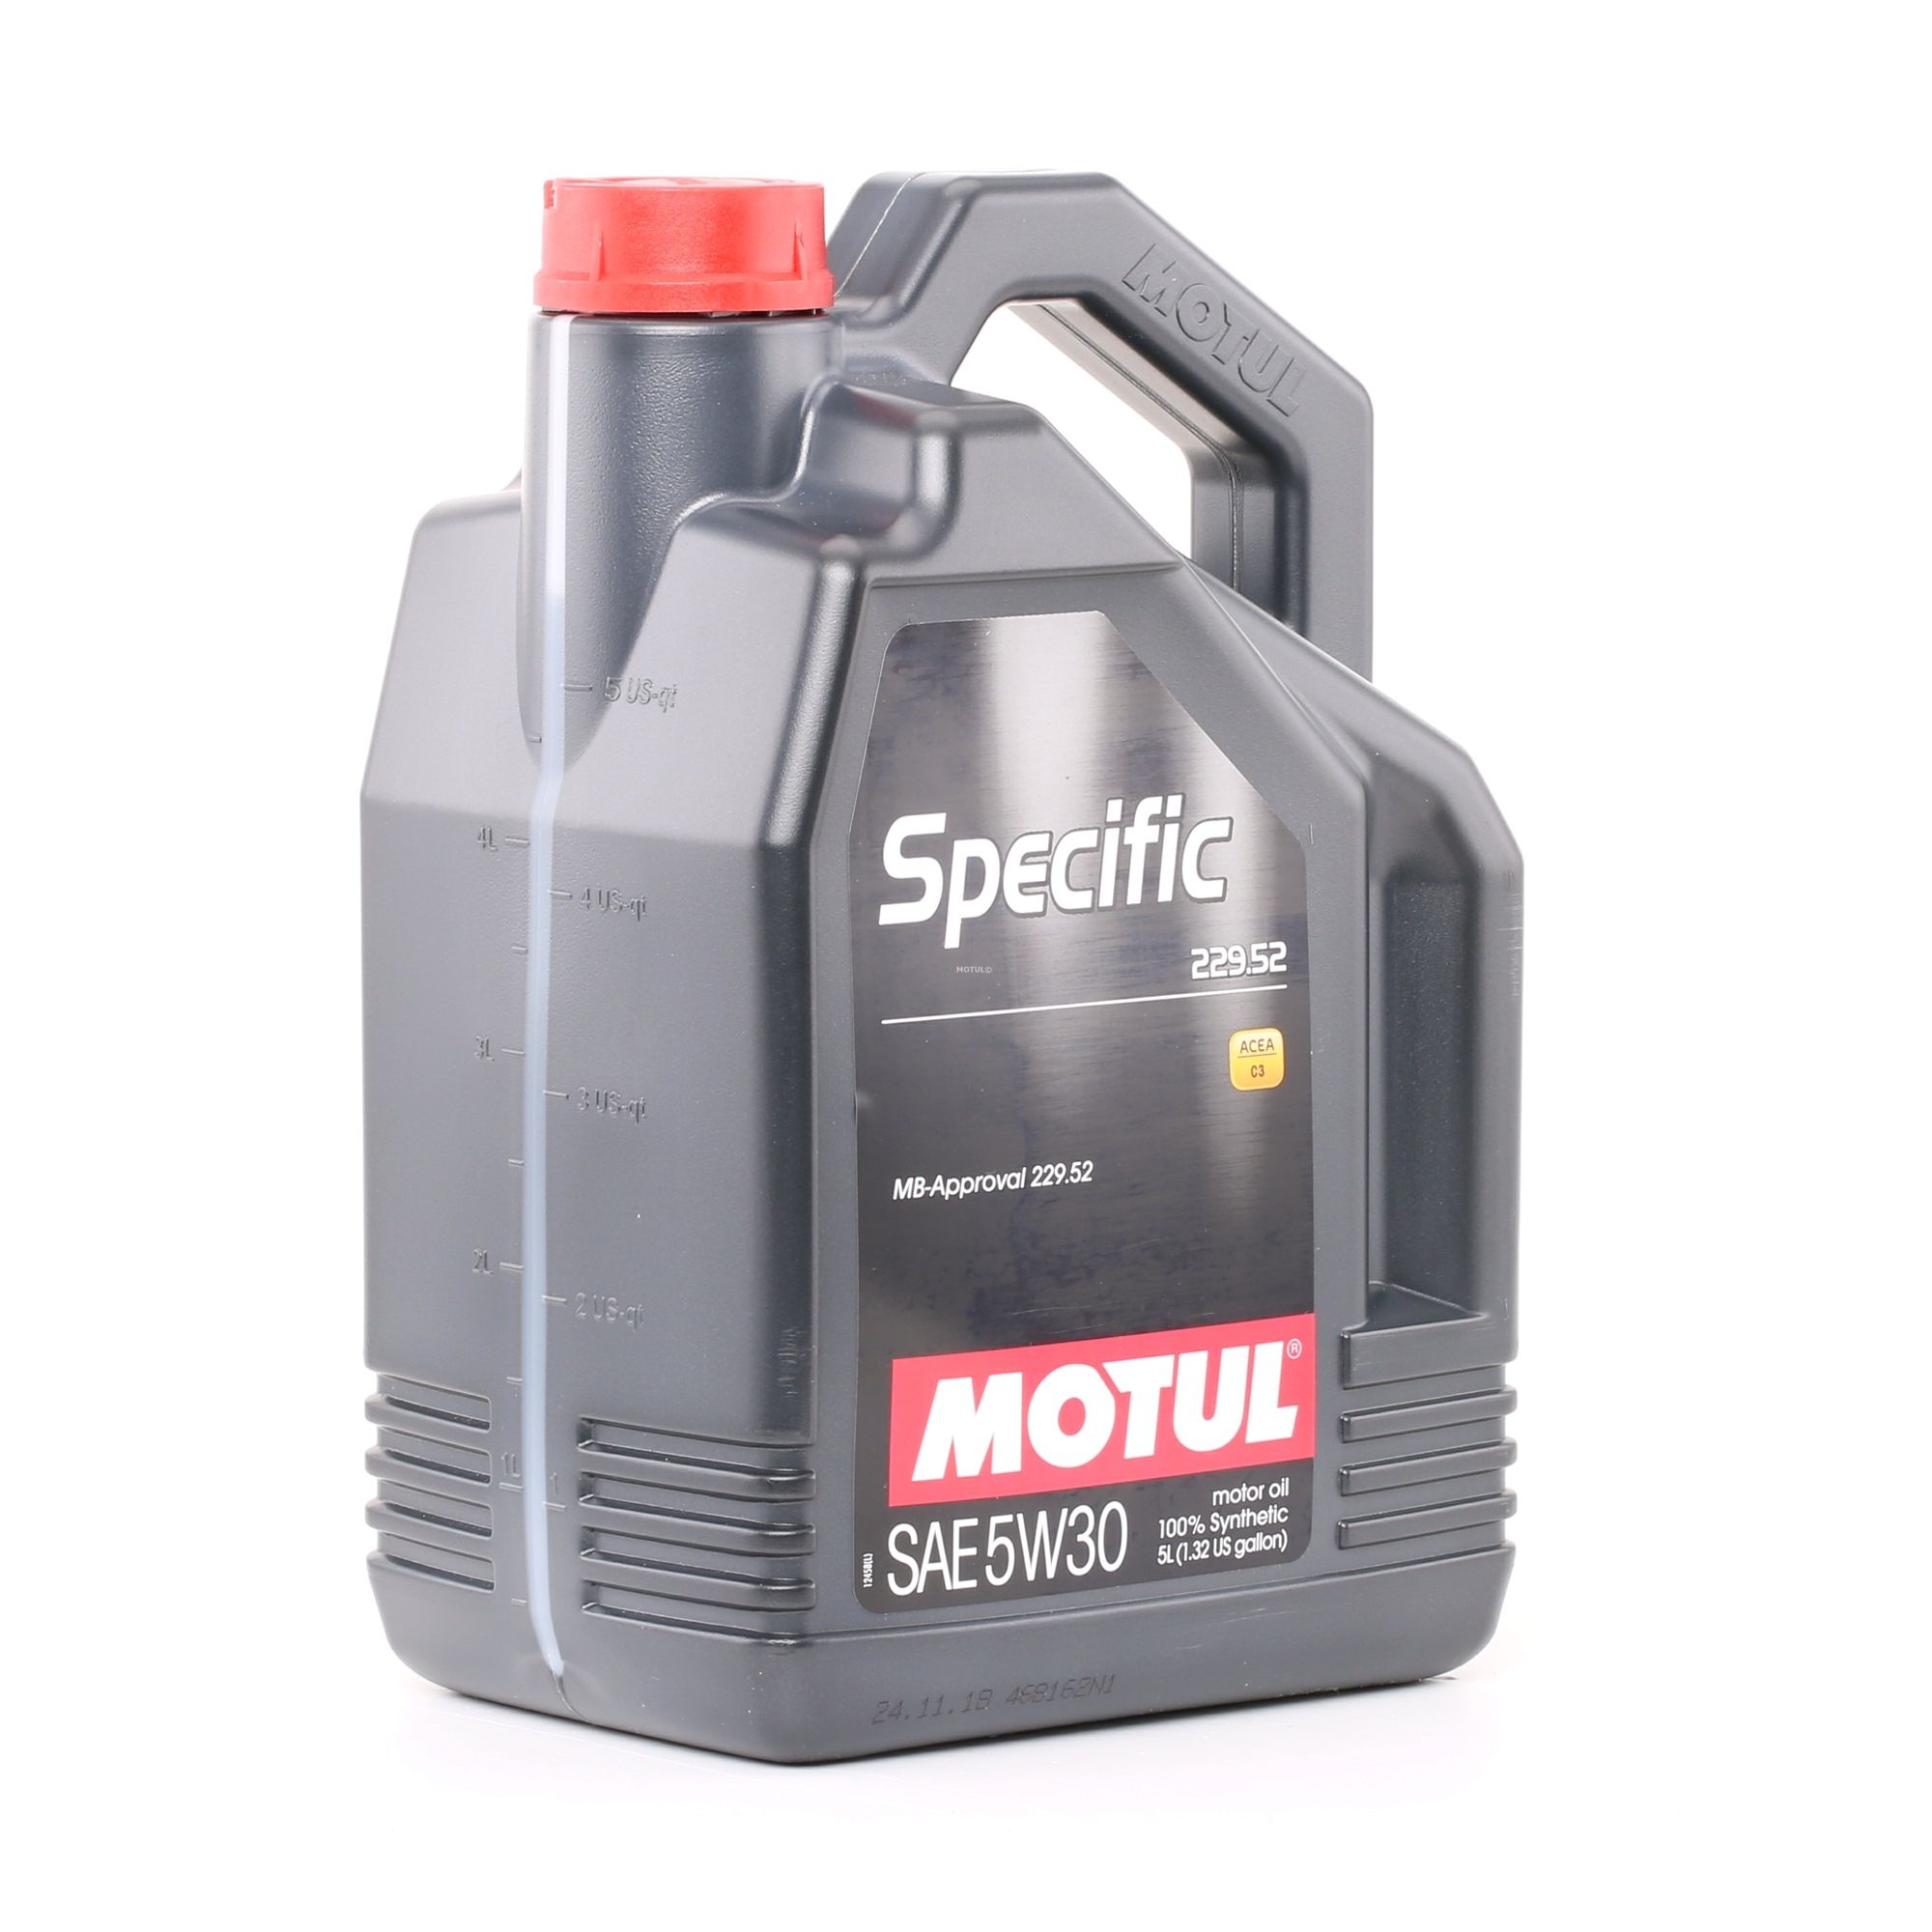 Comprar Aceite de motor para coche MOTUL 104845 SPECIFIC, 229.52 5W-30, 5L, Aceite sintetico